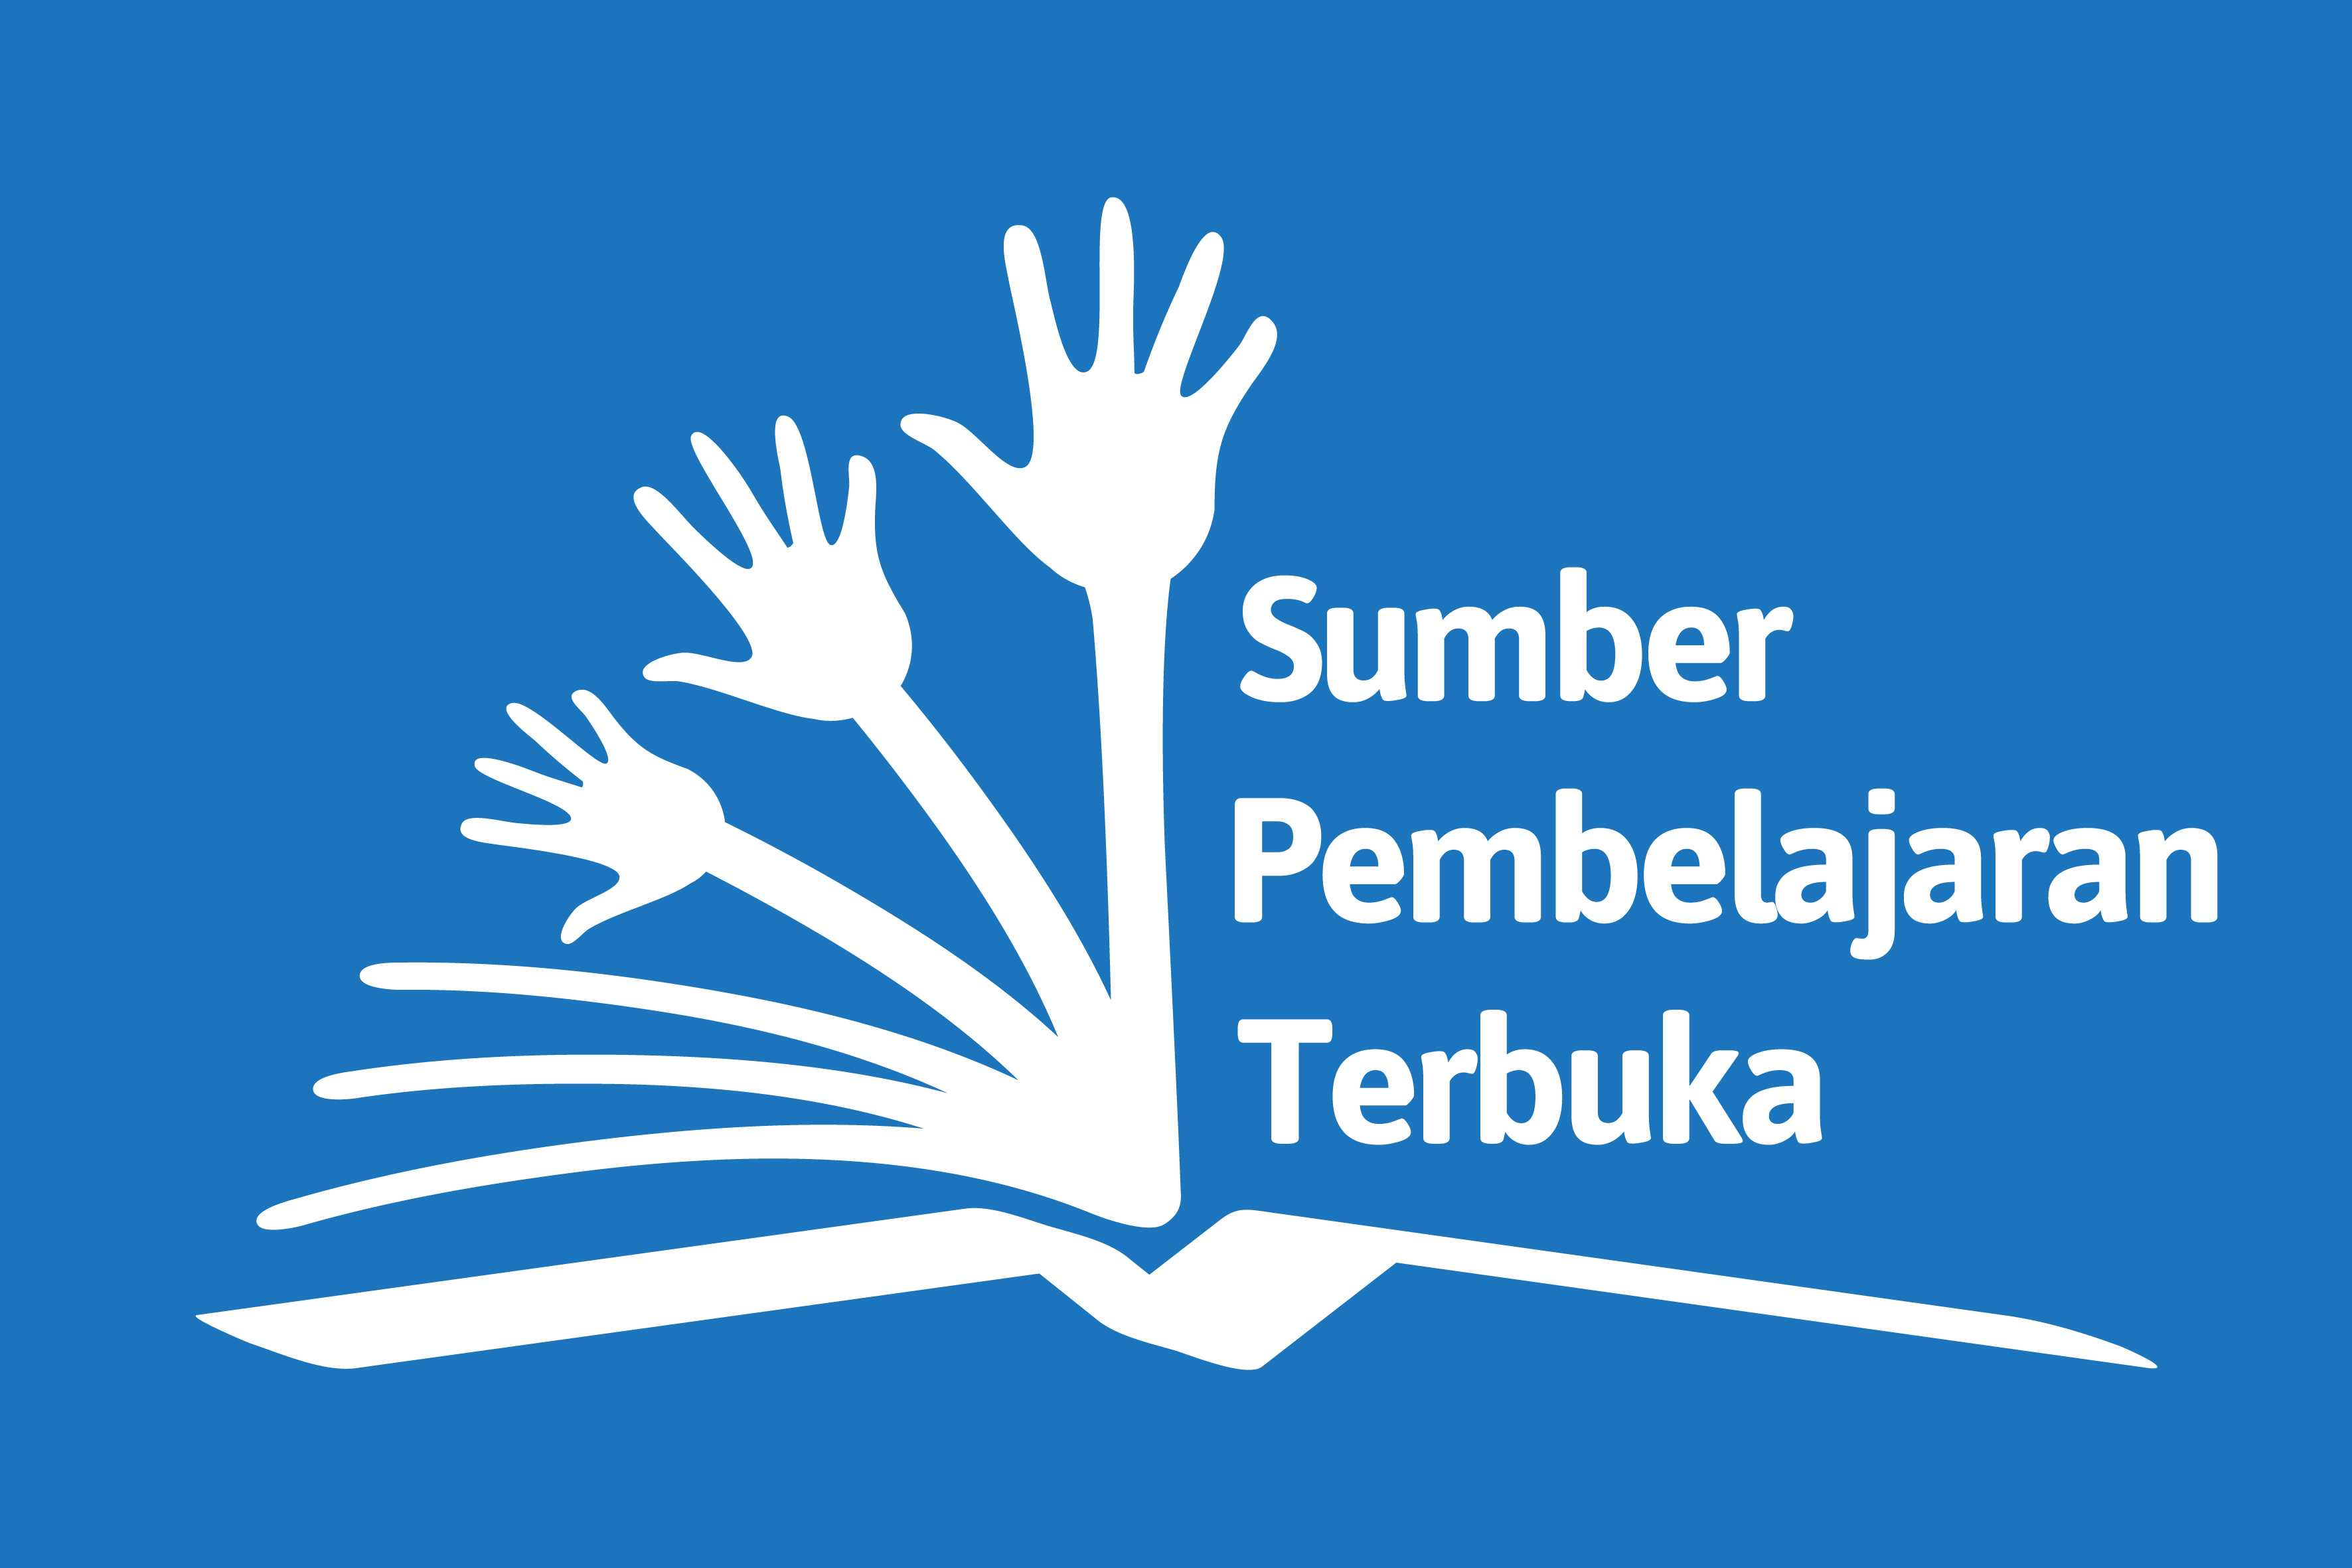 OER_in_Indonesian_Sumber_Pembelajaran_Terbuka_Logo